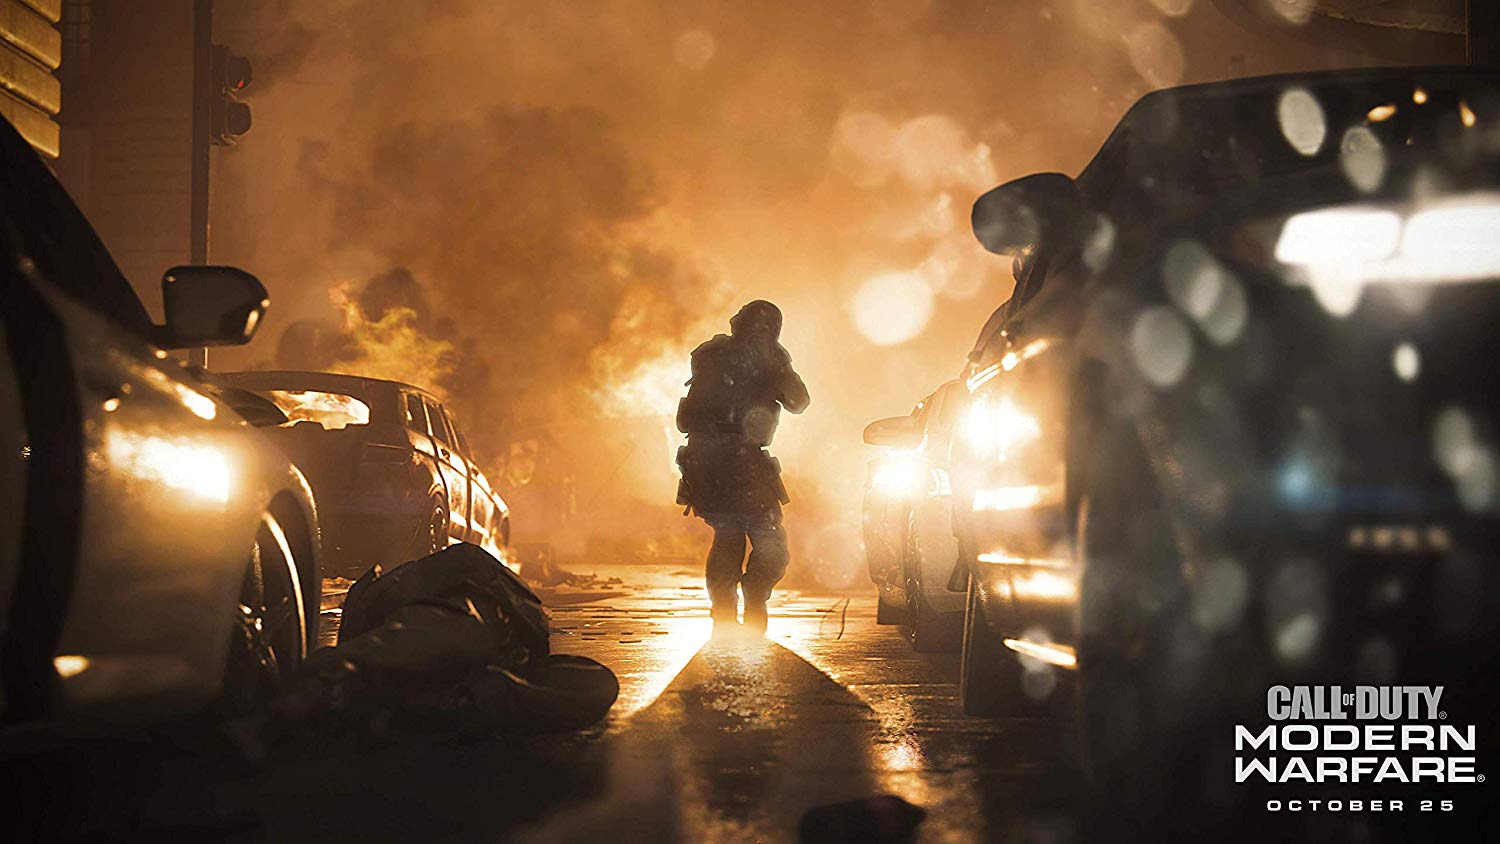 Call of Duty: Modern Warfare scene a